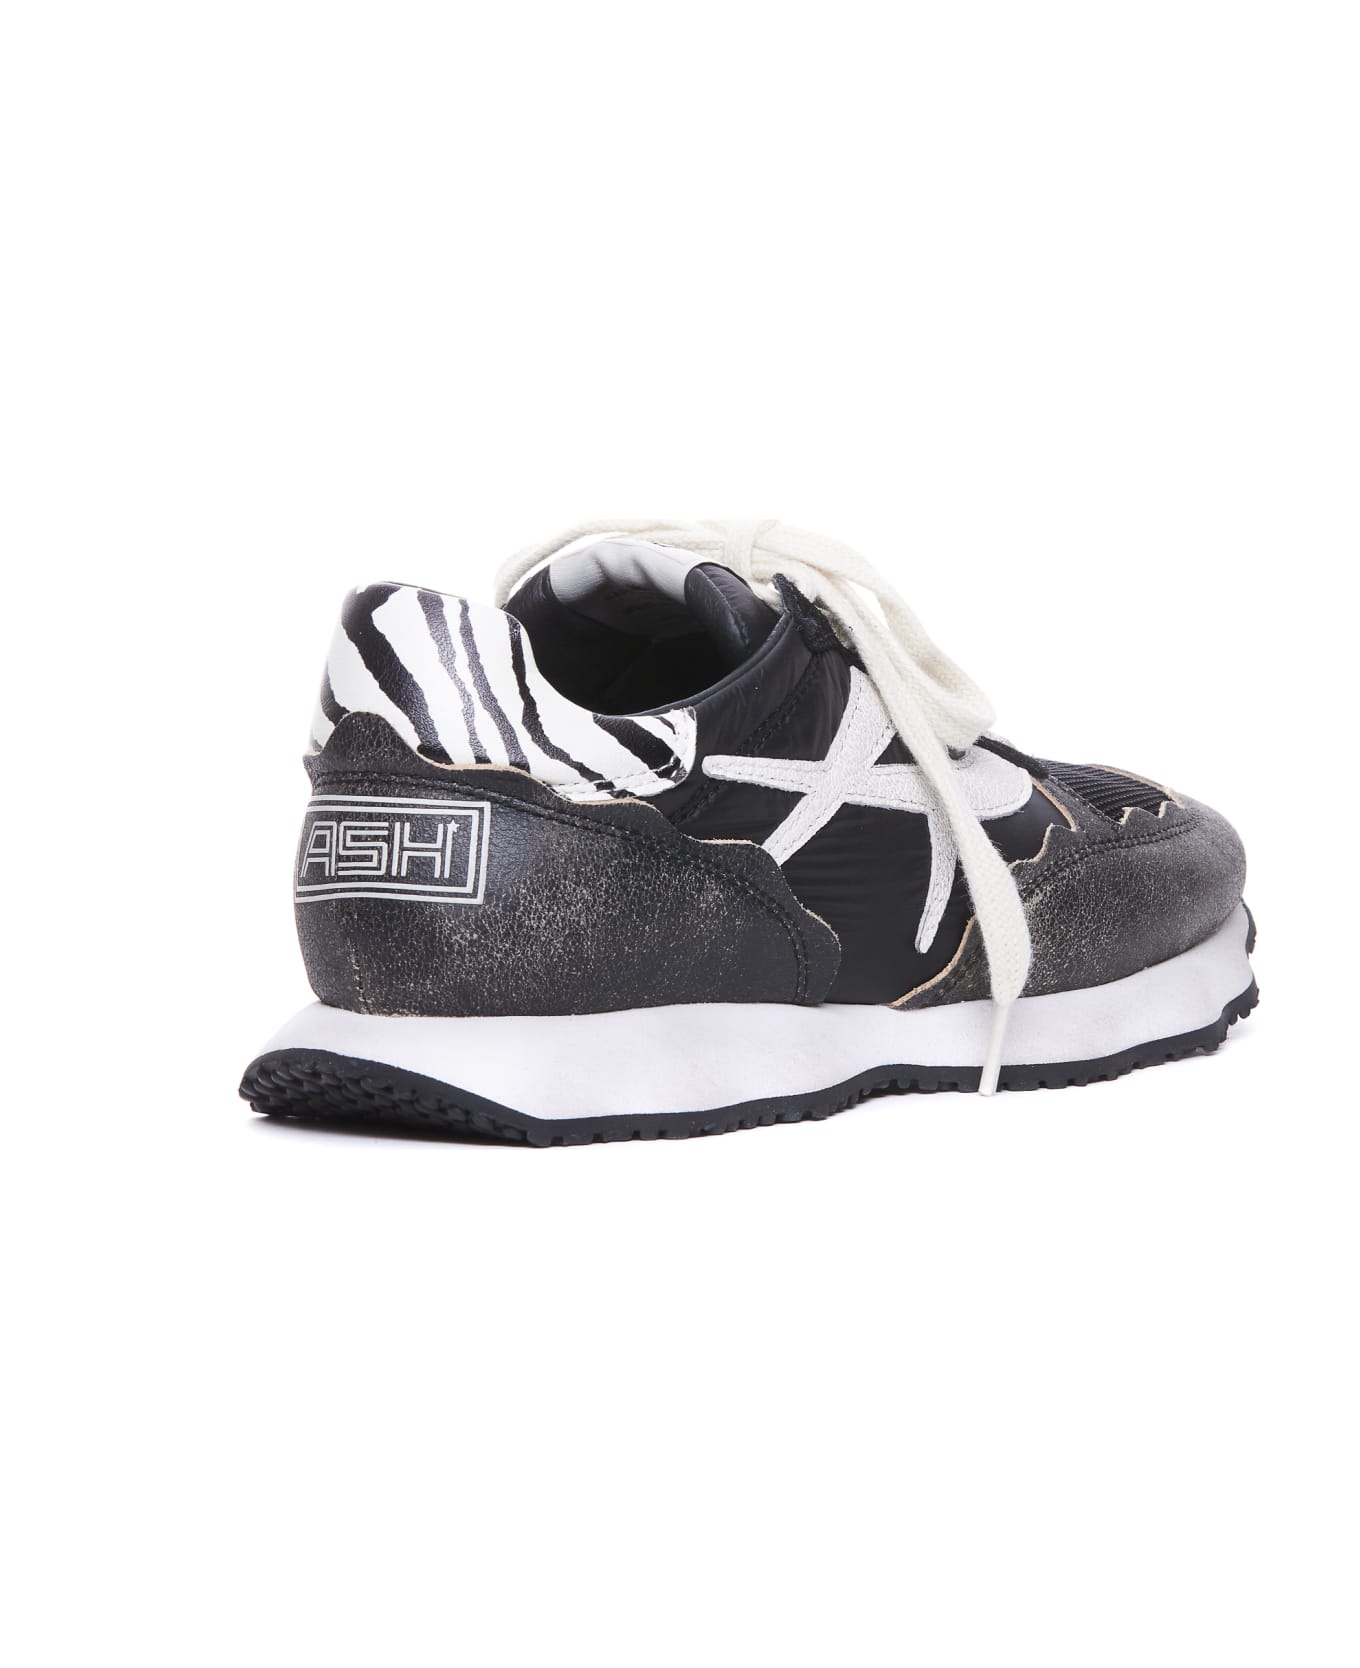 Ash Sunstar Sneakers - Black